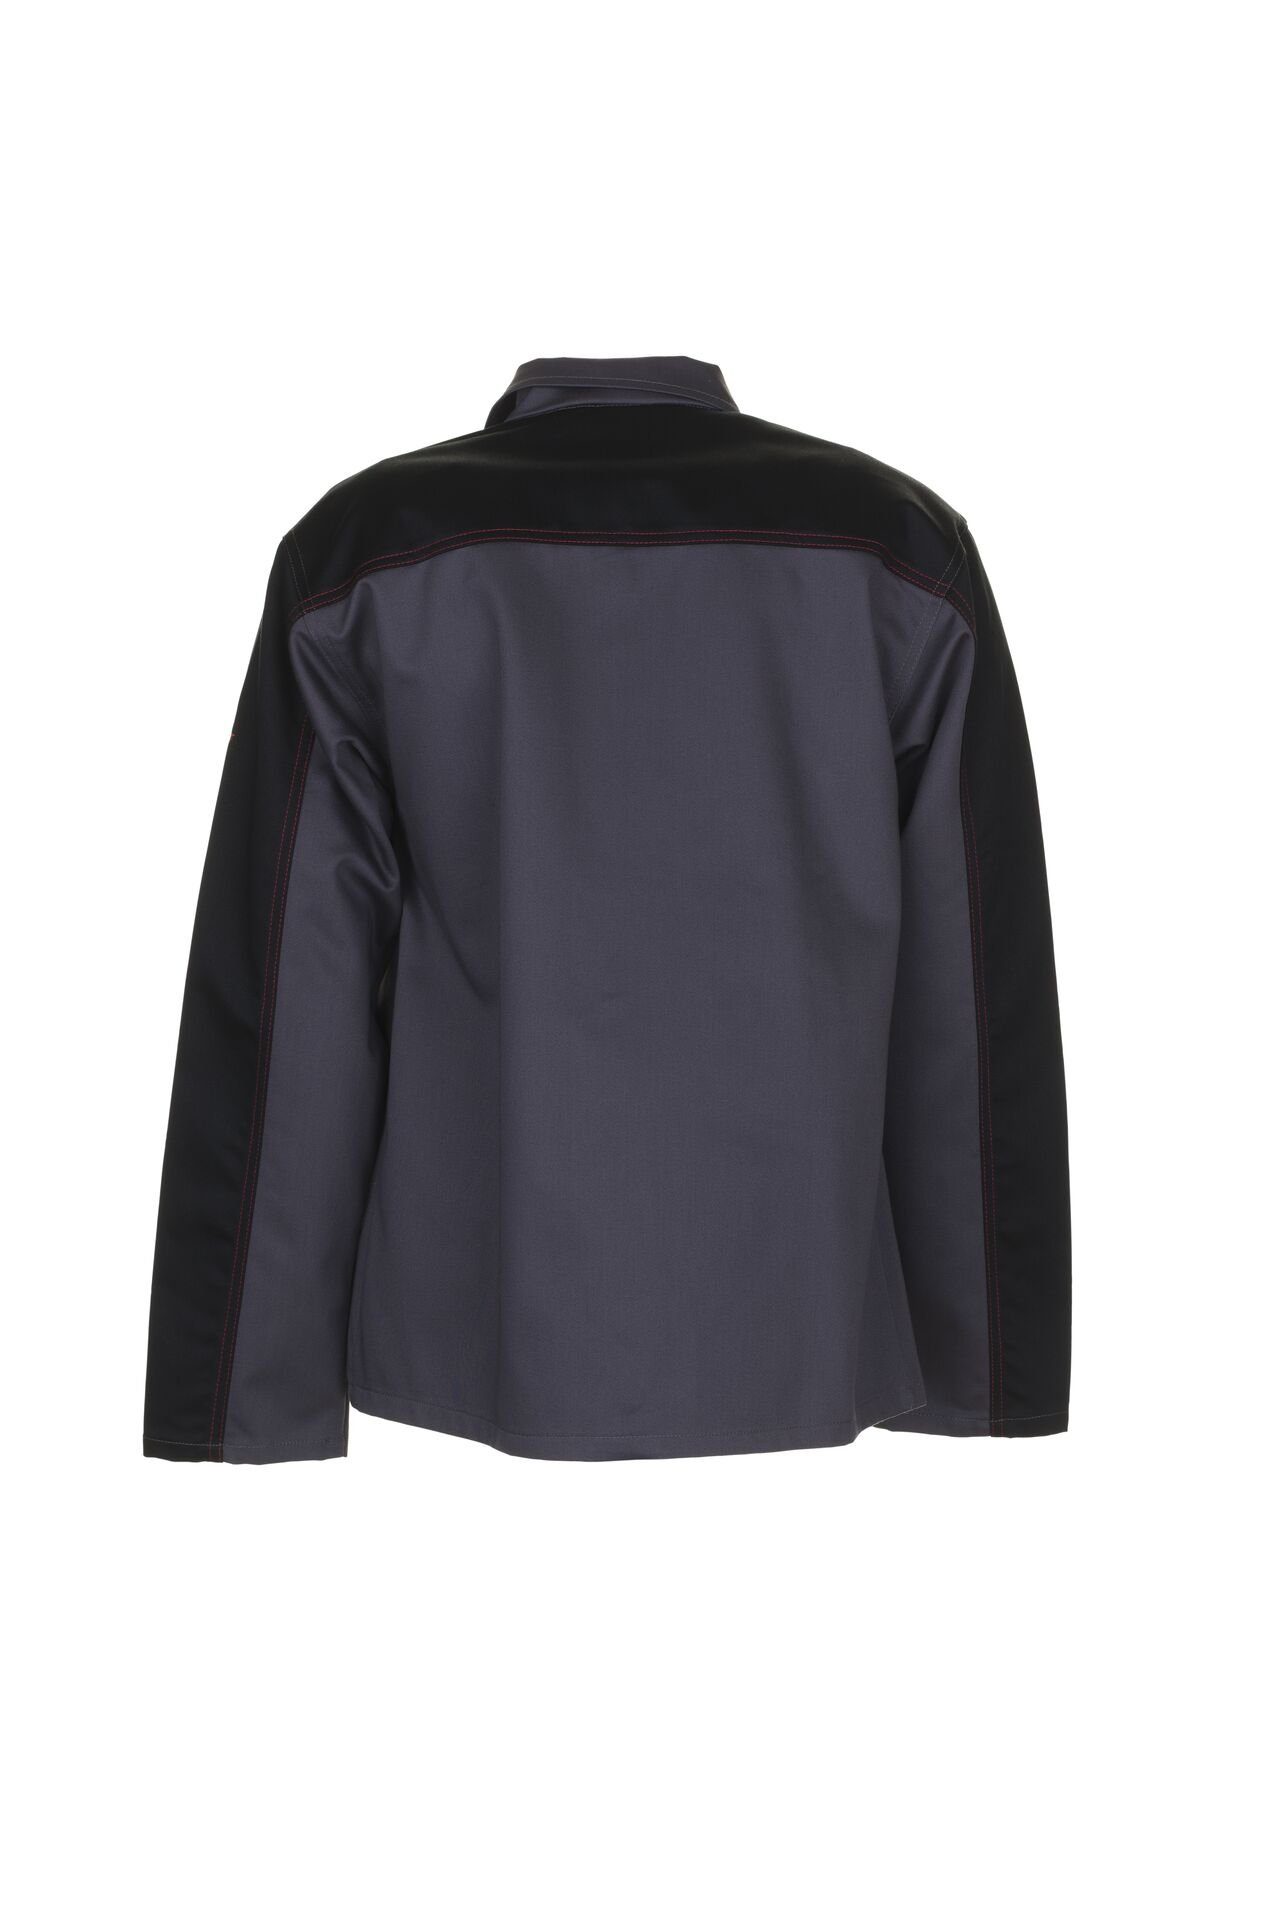 Planam Arbeitshose Jacke Weld Shield grau/schwarz Größe 52 (1-tlg) | Arbeitshosen